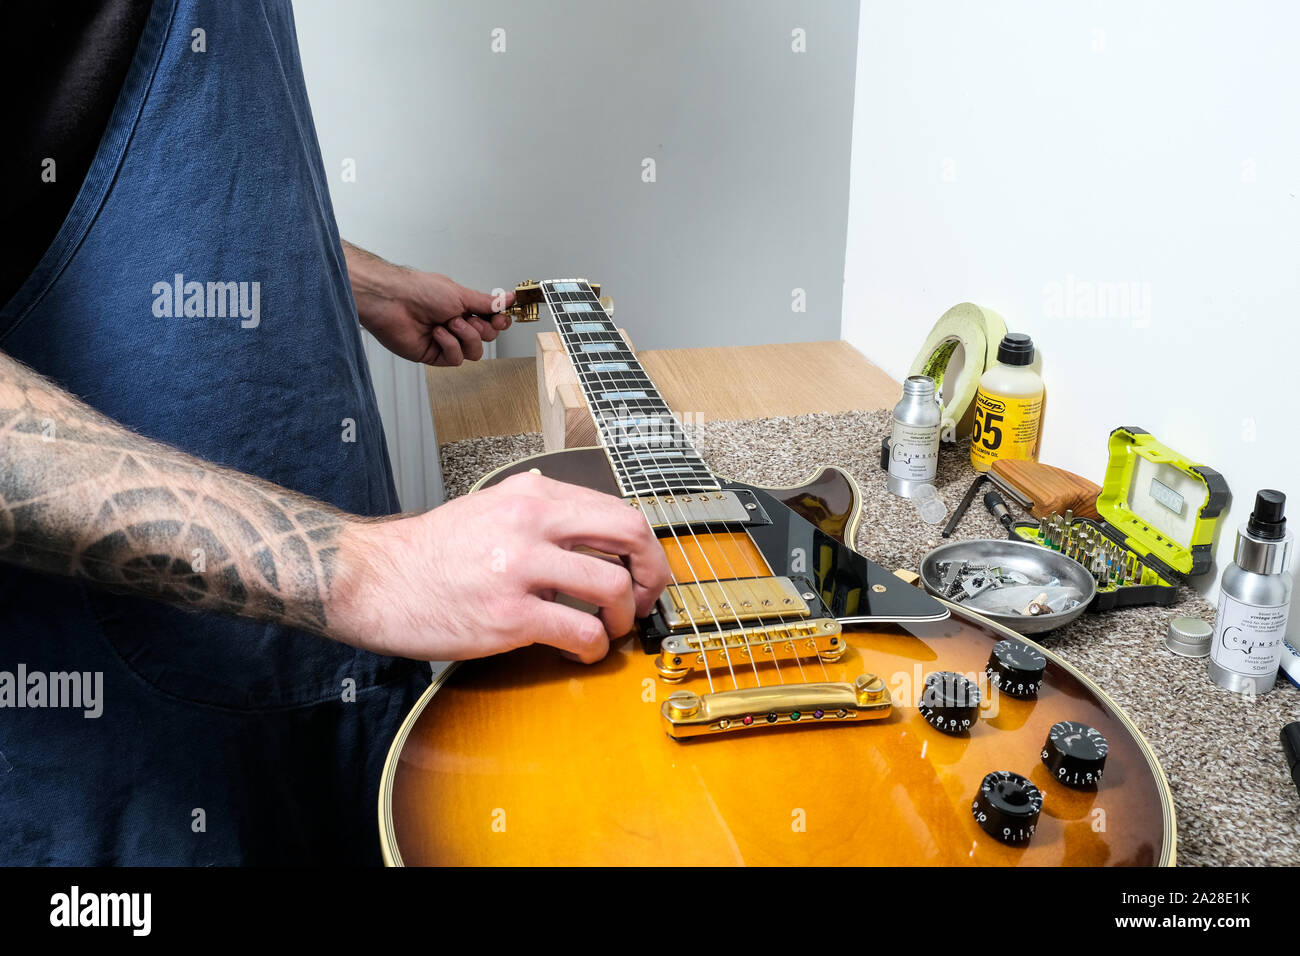 Un tecnico di chitarra o di tecnologia che sintonizza una chitarra elettrica re strung Gibson nel suo laboratorio. Sta girando il palo di sintonizzazione mentre sta pizzicando la stringa Foto Stock